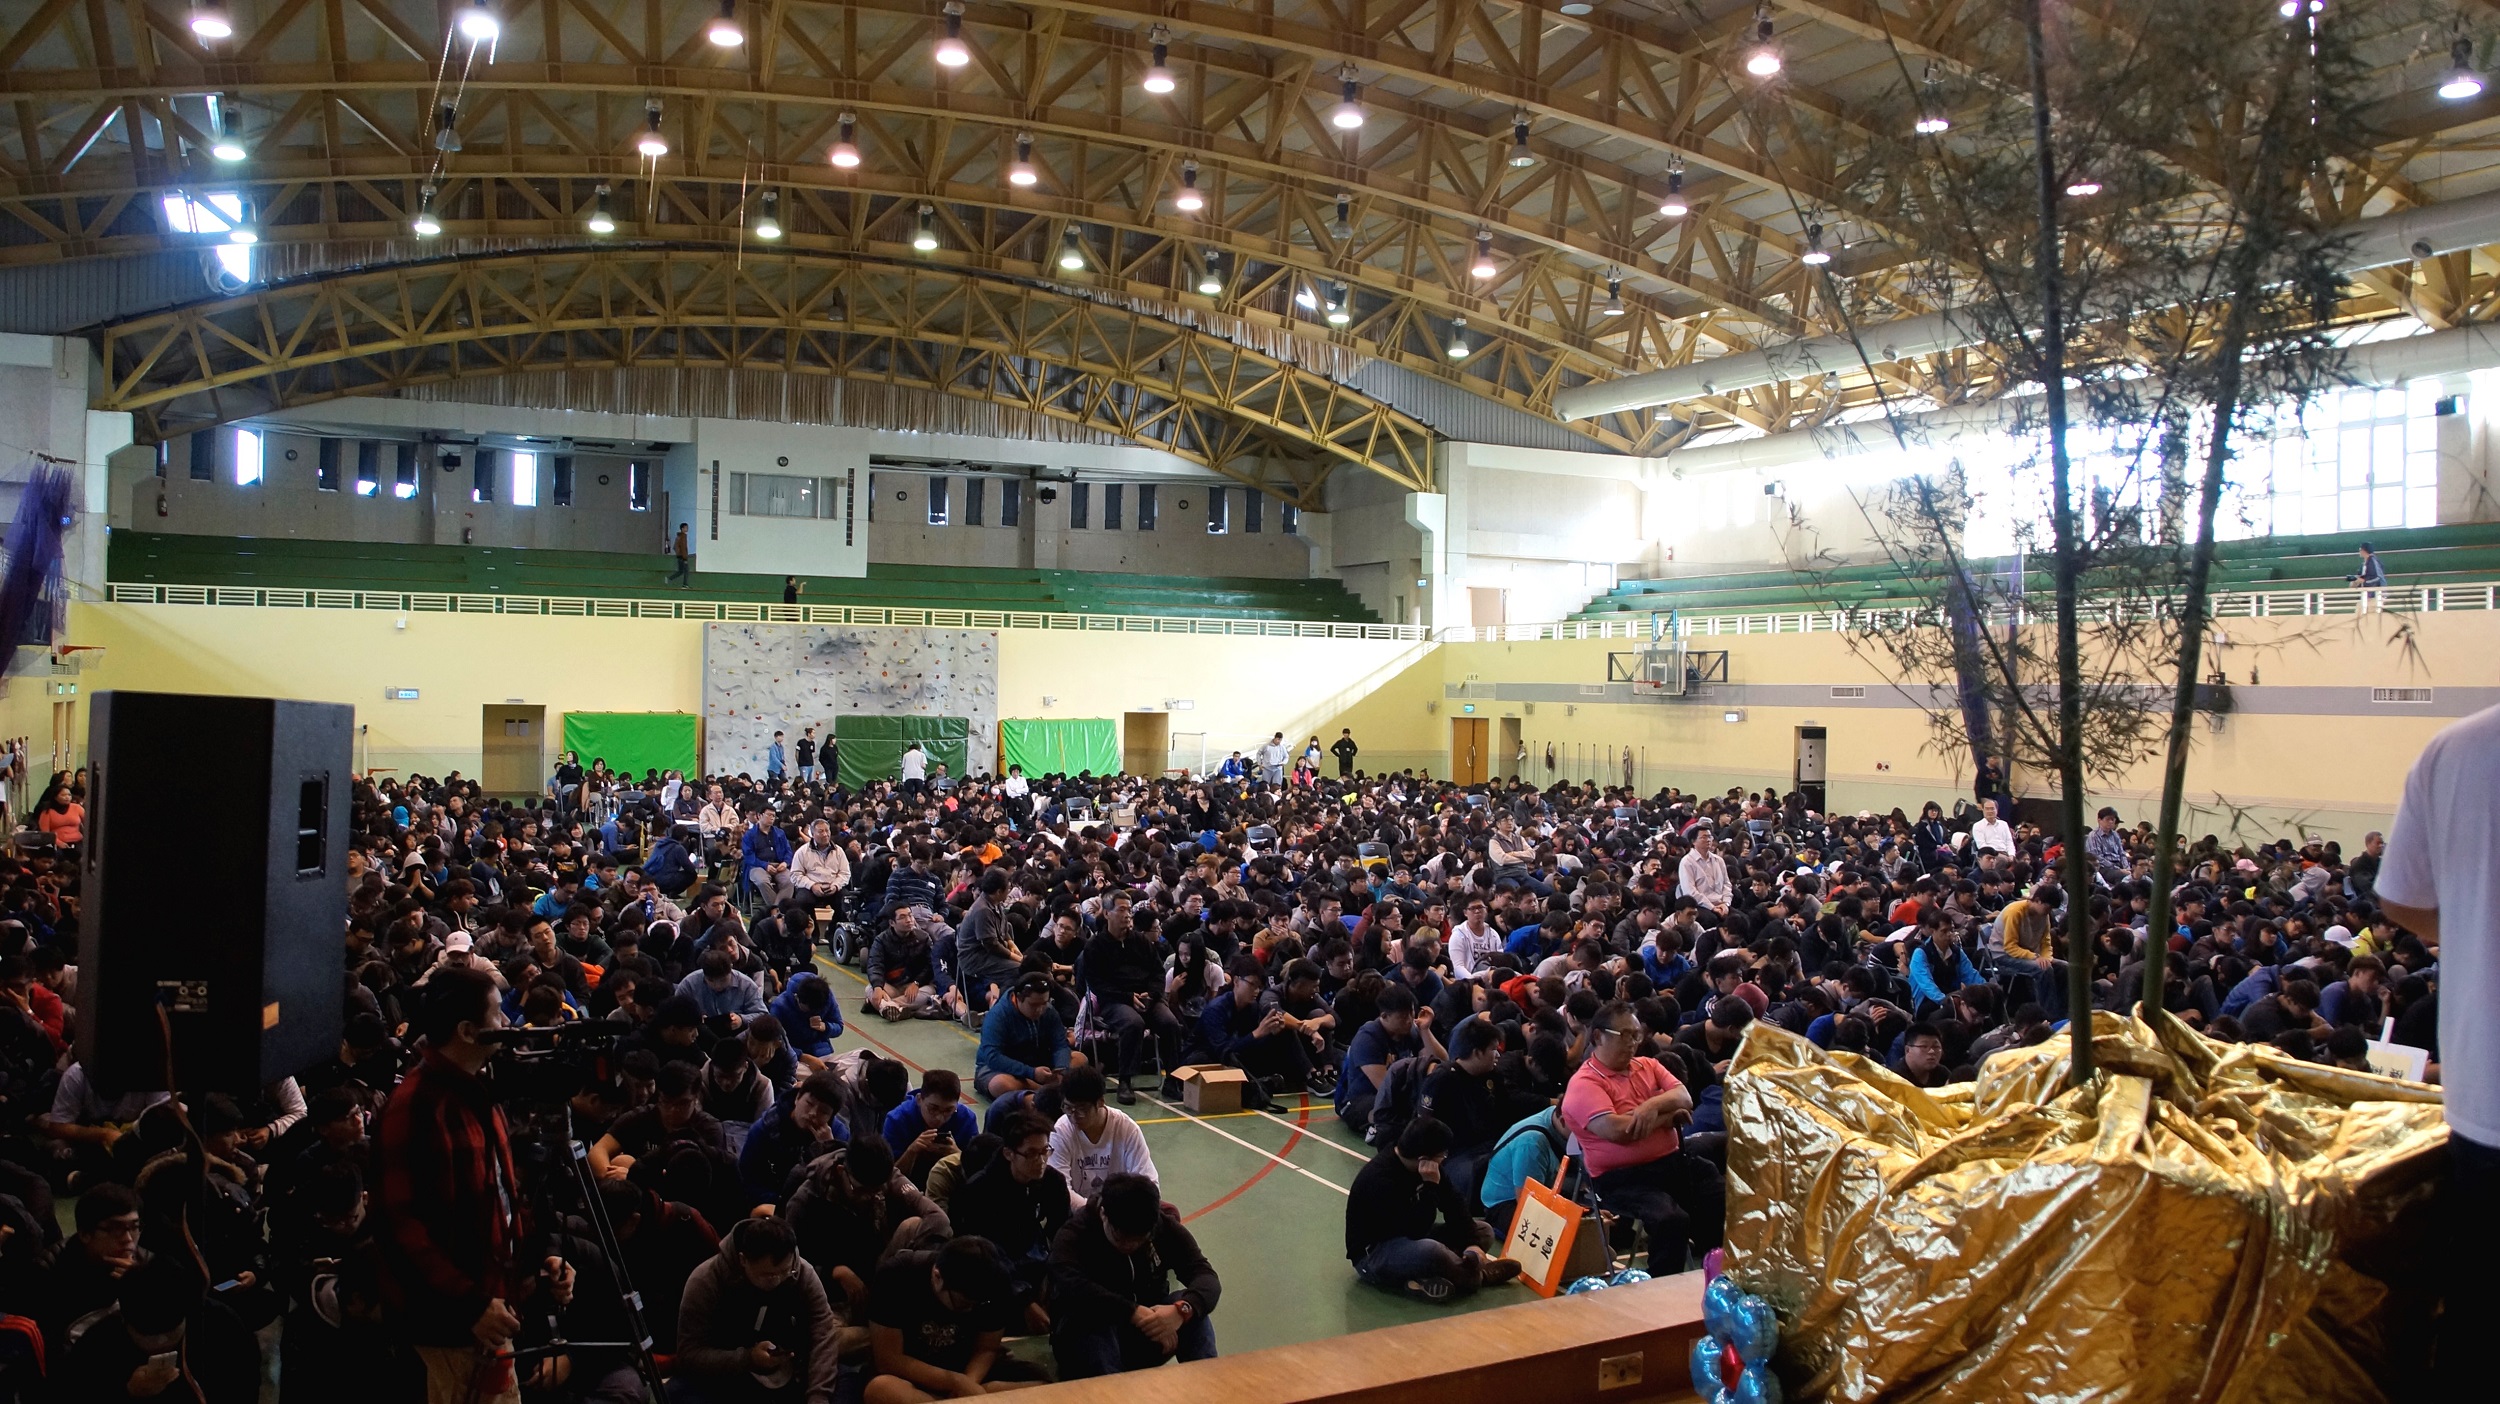 瓜竹傳情活動約有1800餘位一、二年級學生參加

